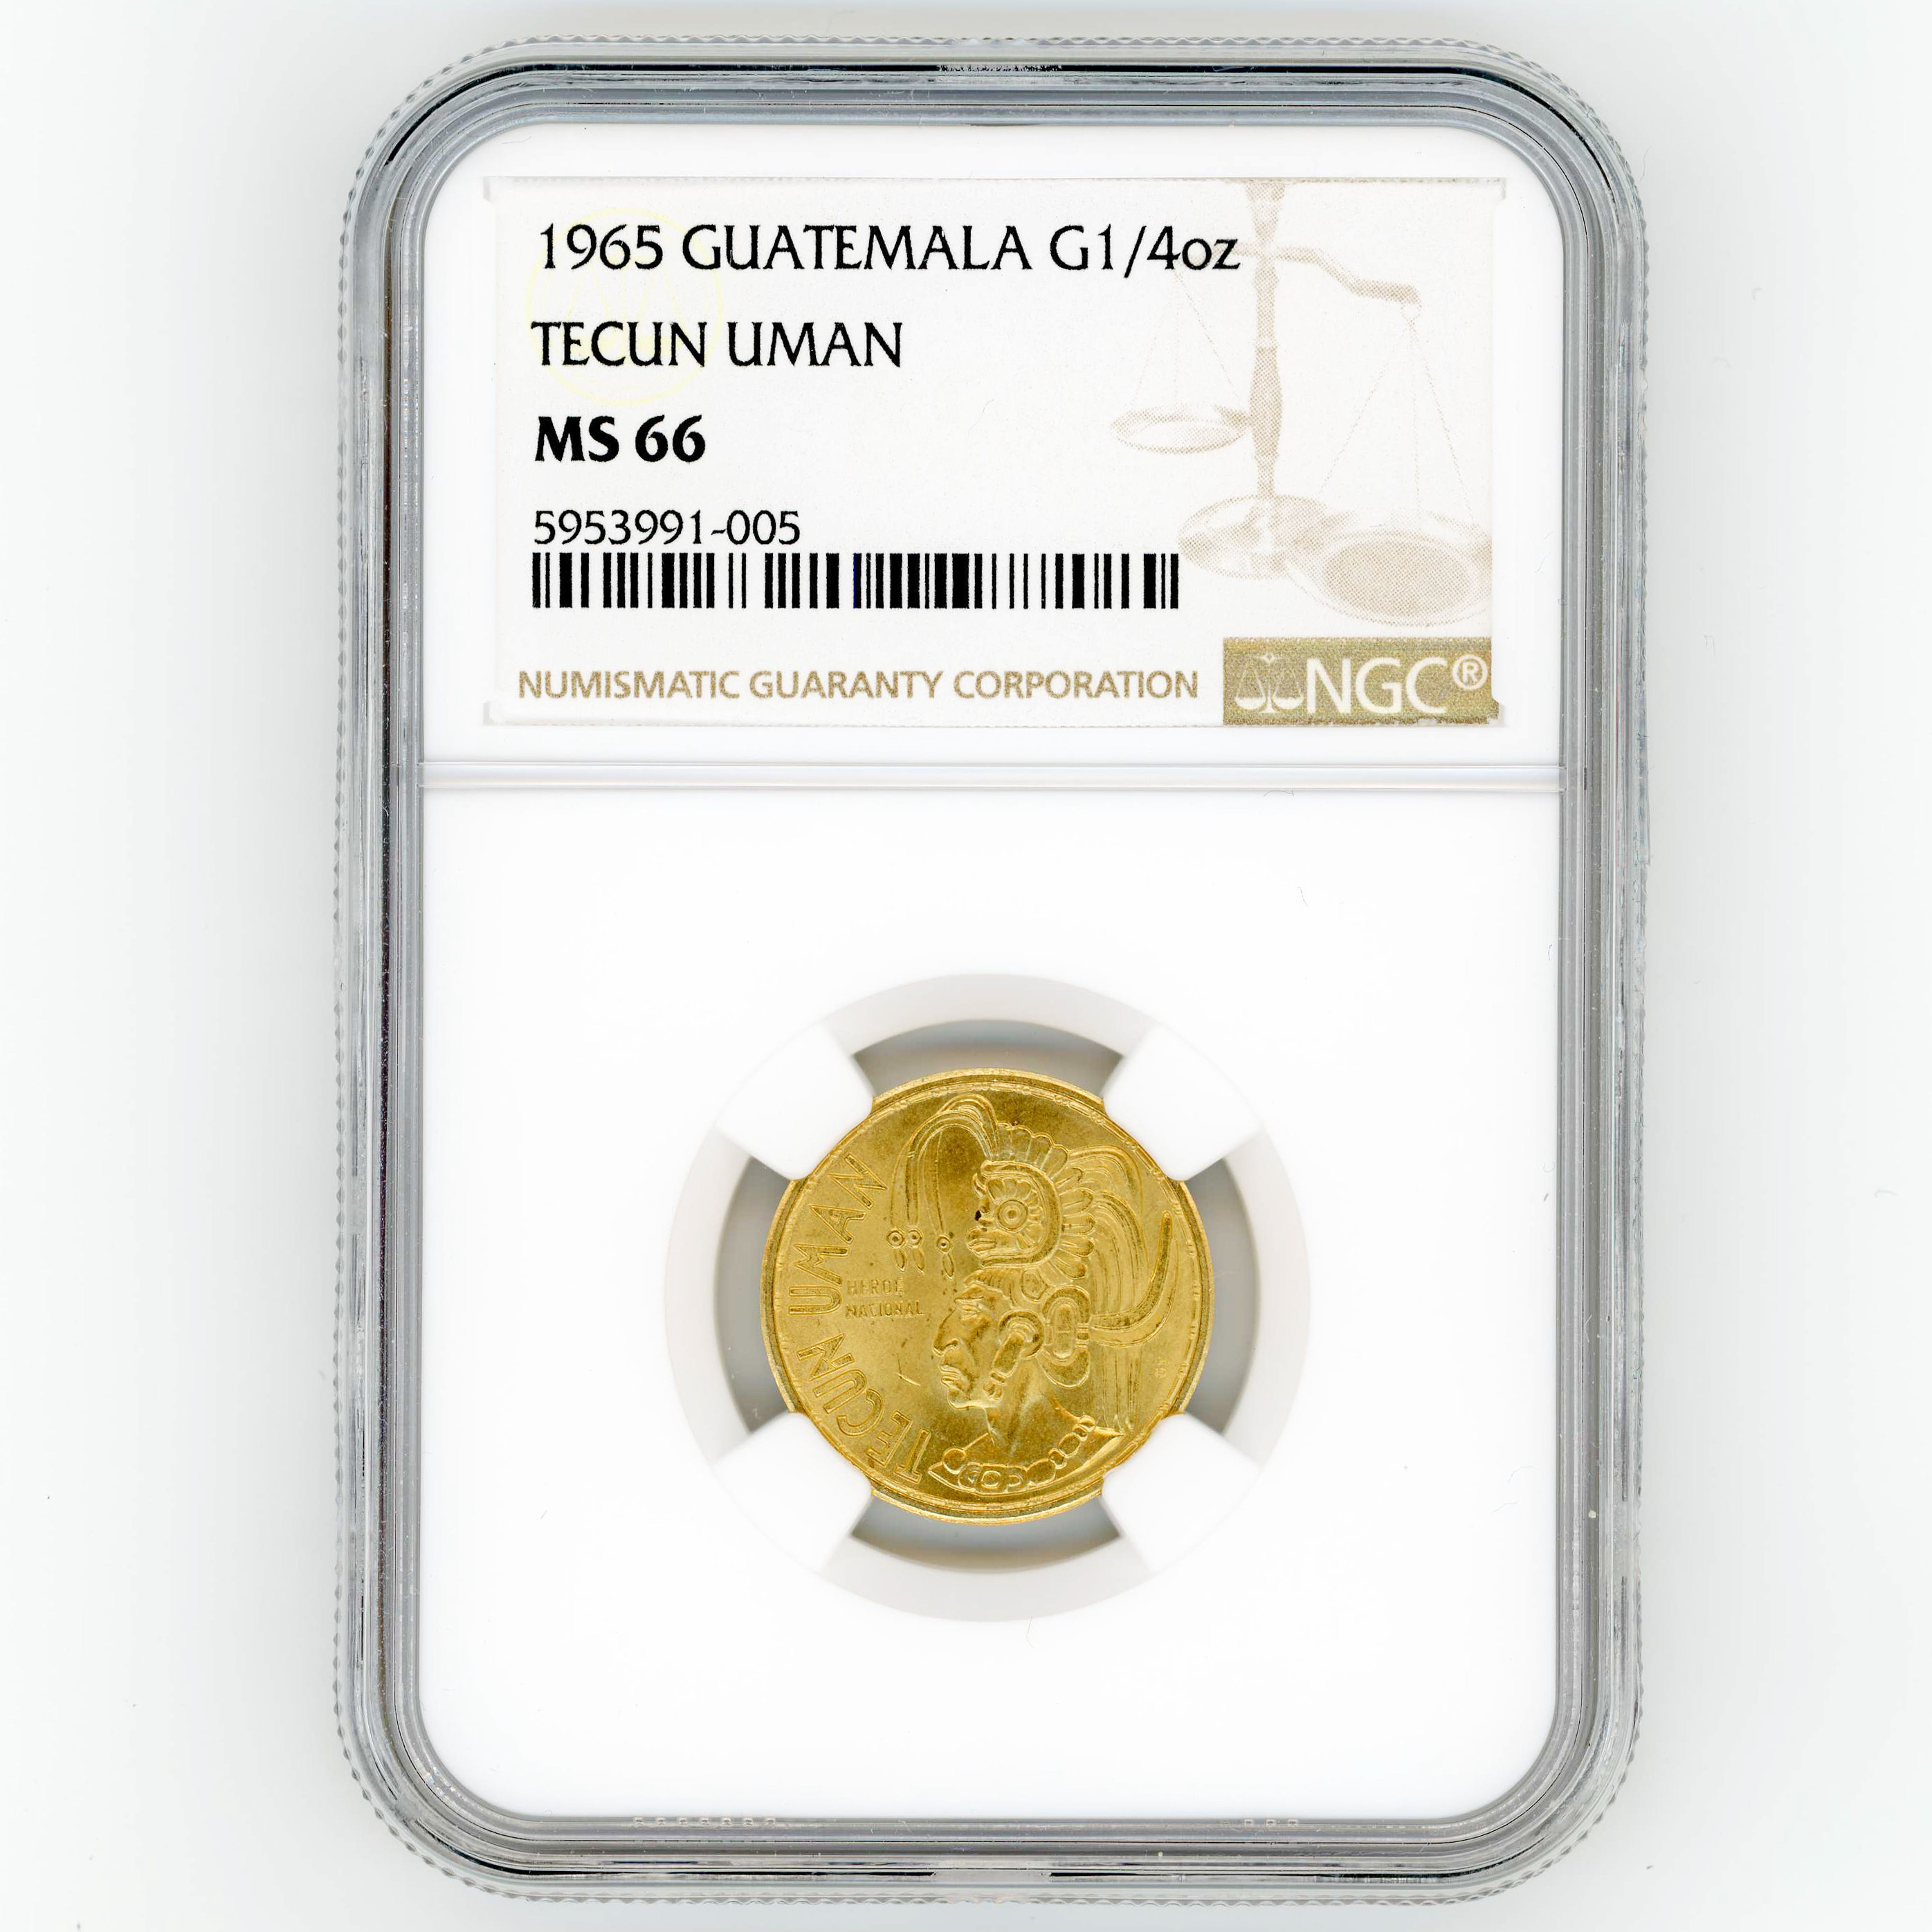 Guatemala - TECUN UMAN - 1965 avers